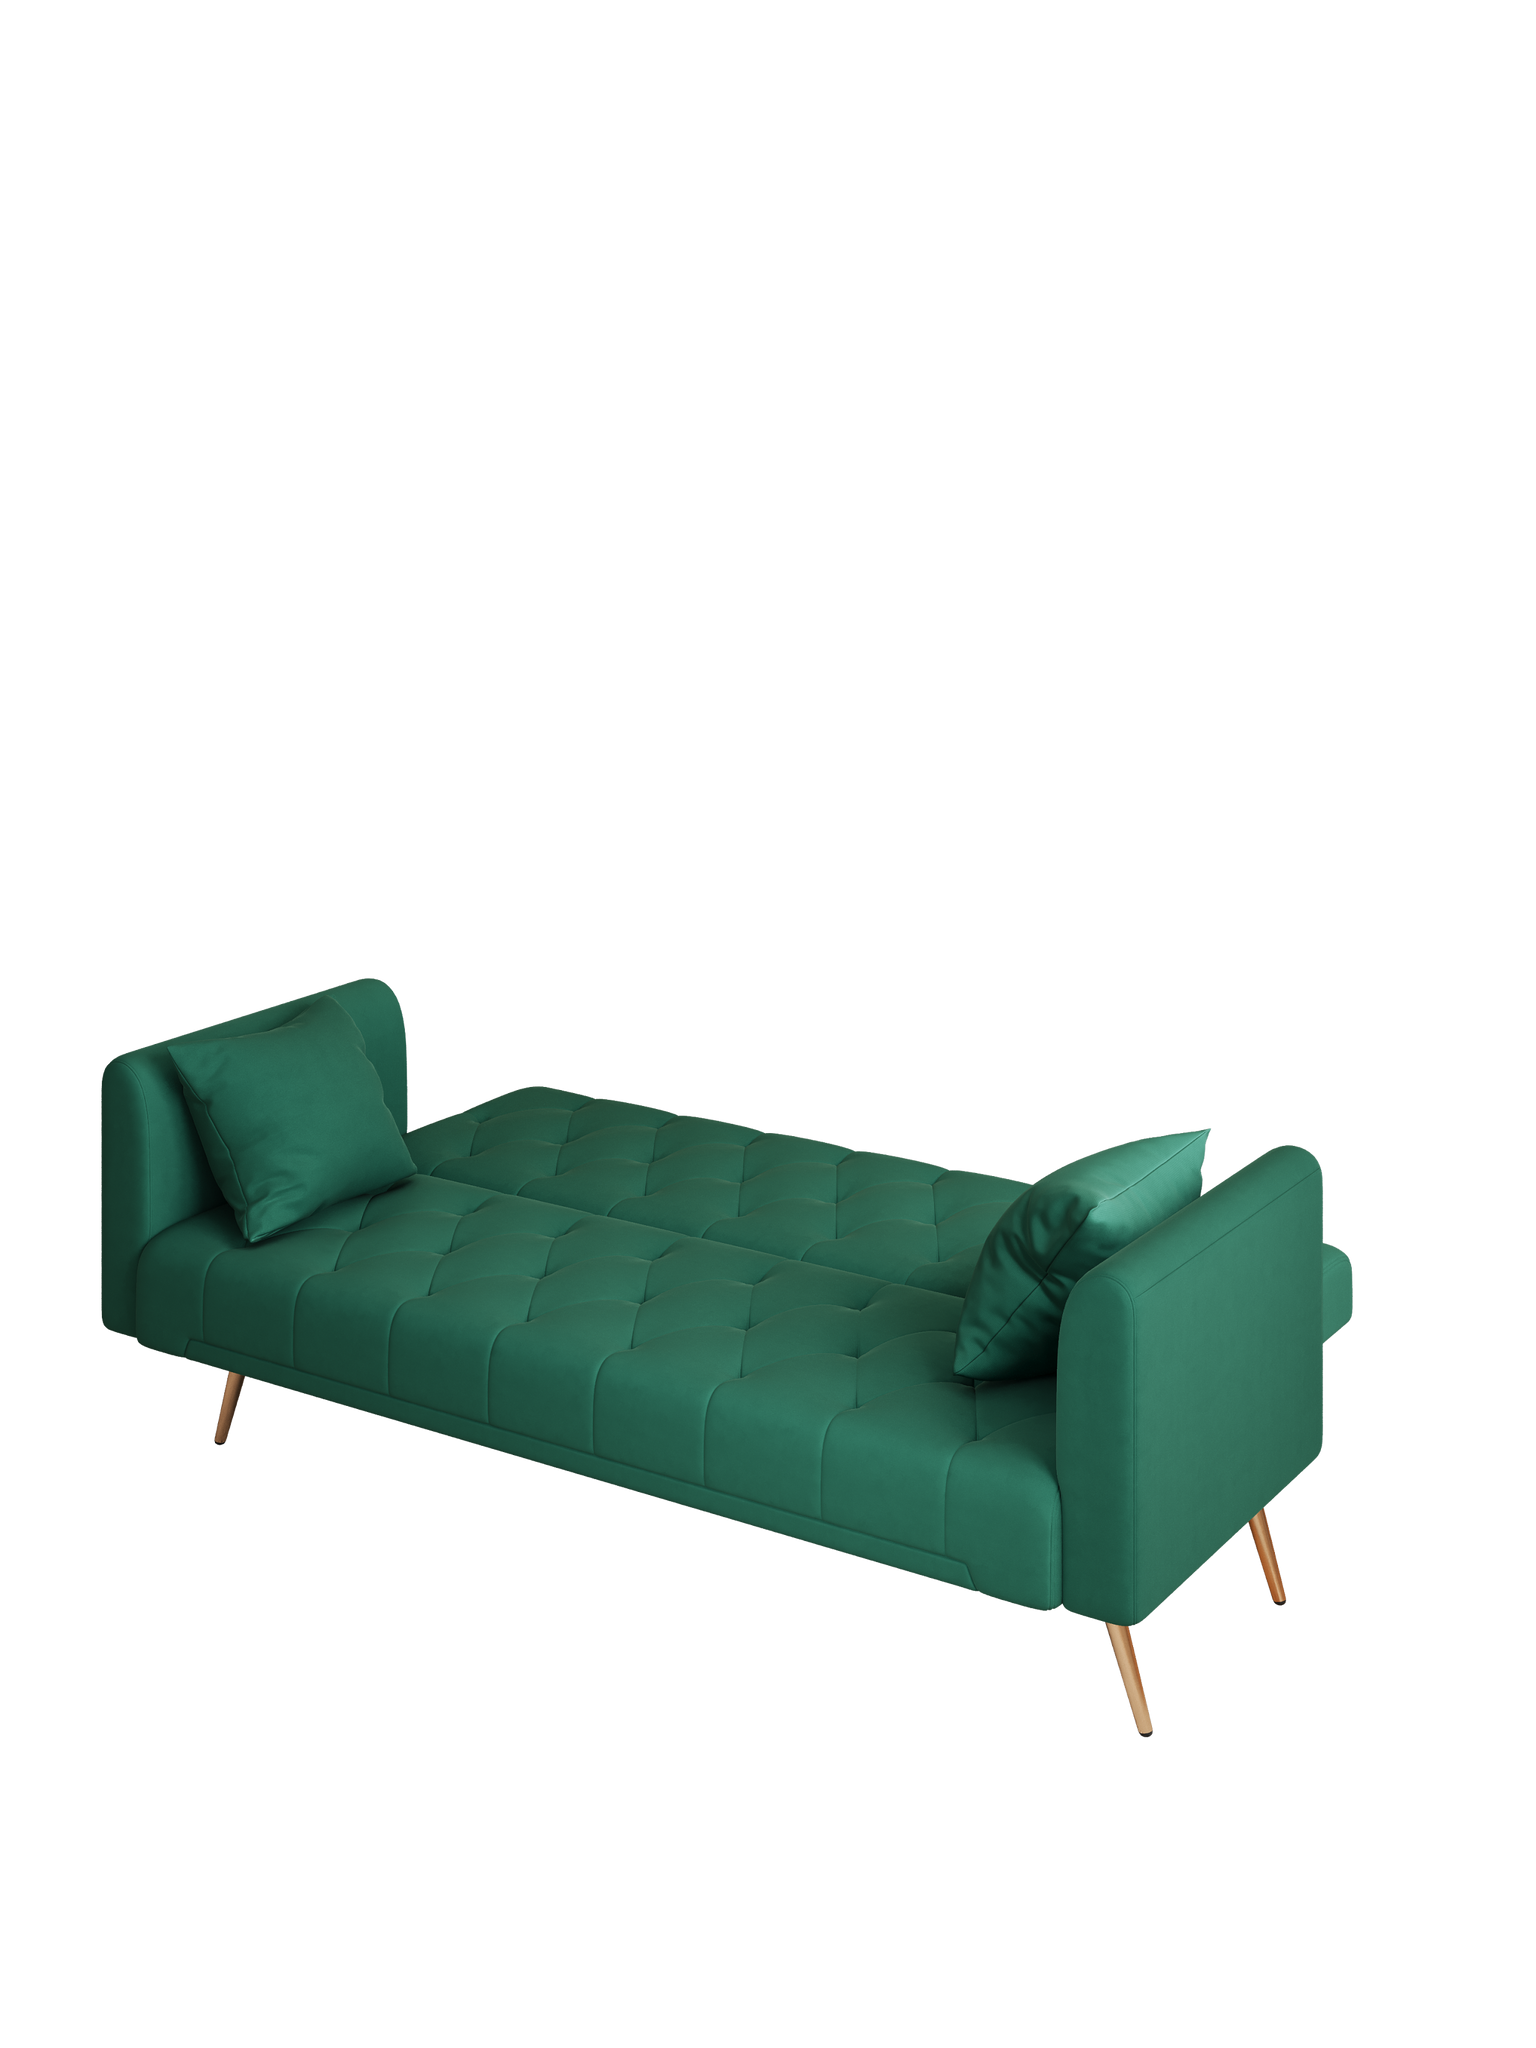 71" Convertible Double Folding Living Room Sofa Bed green-velvet